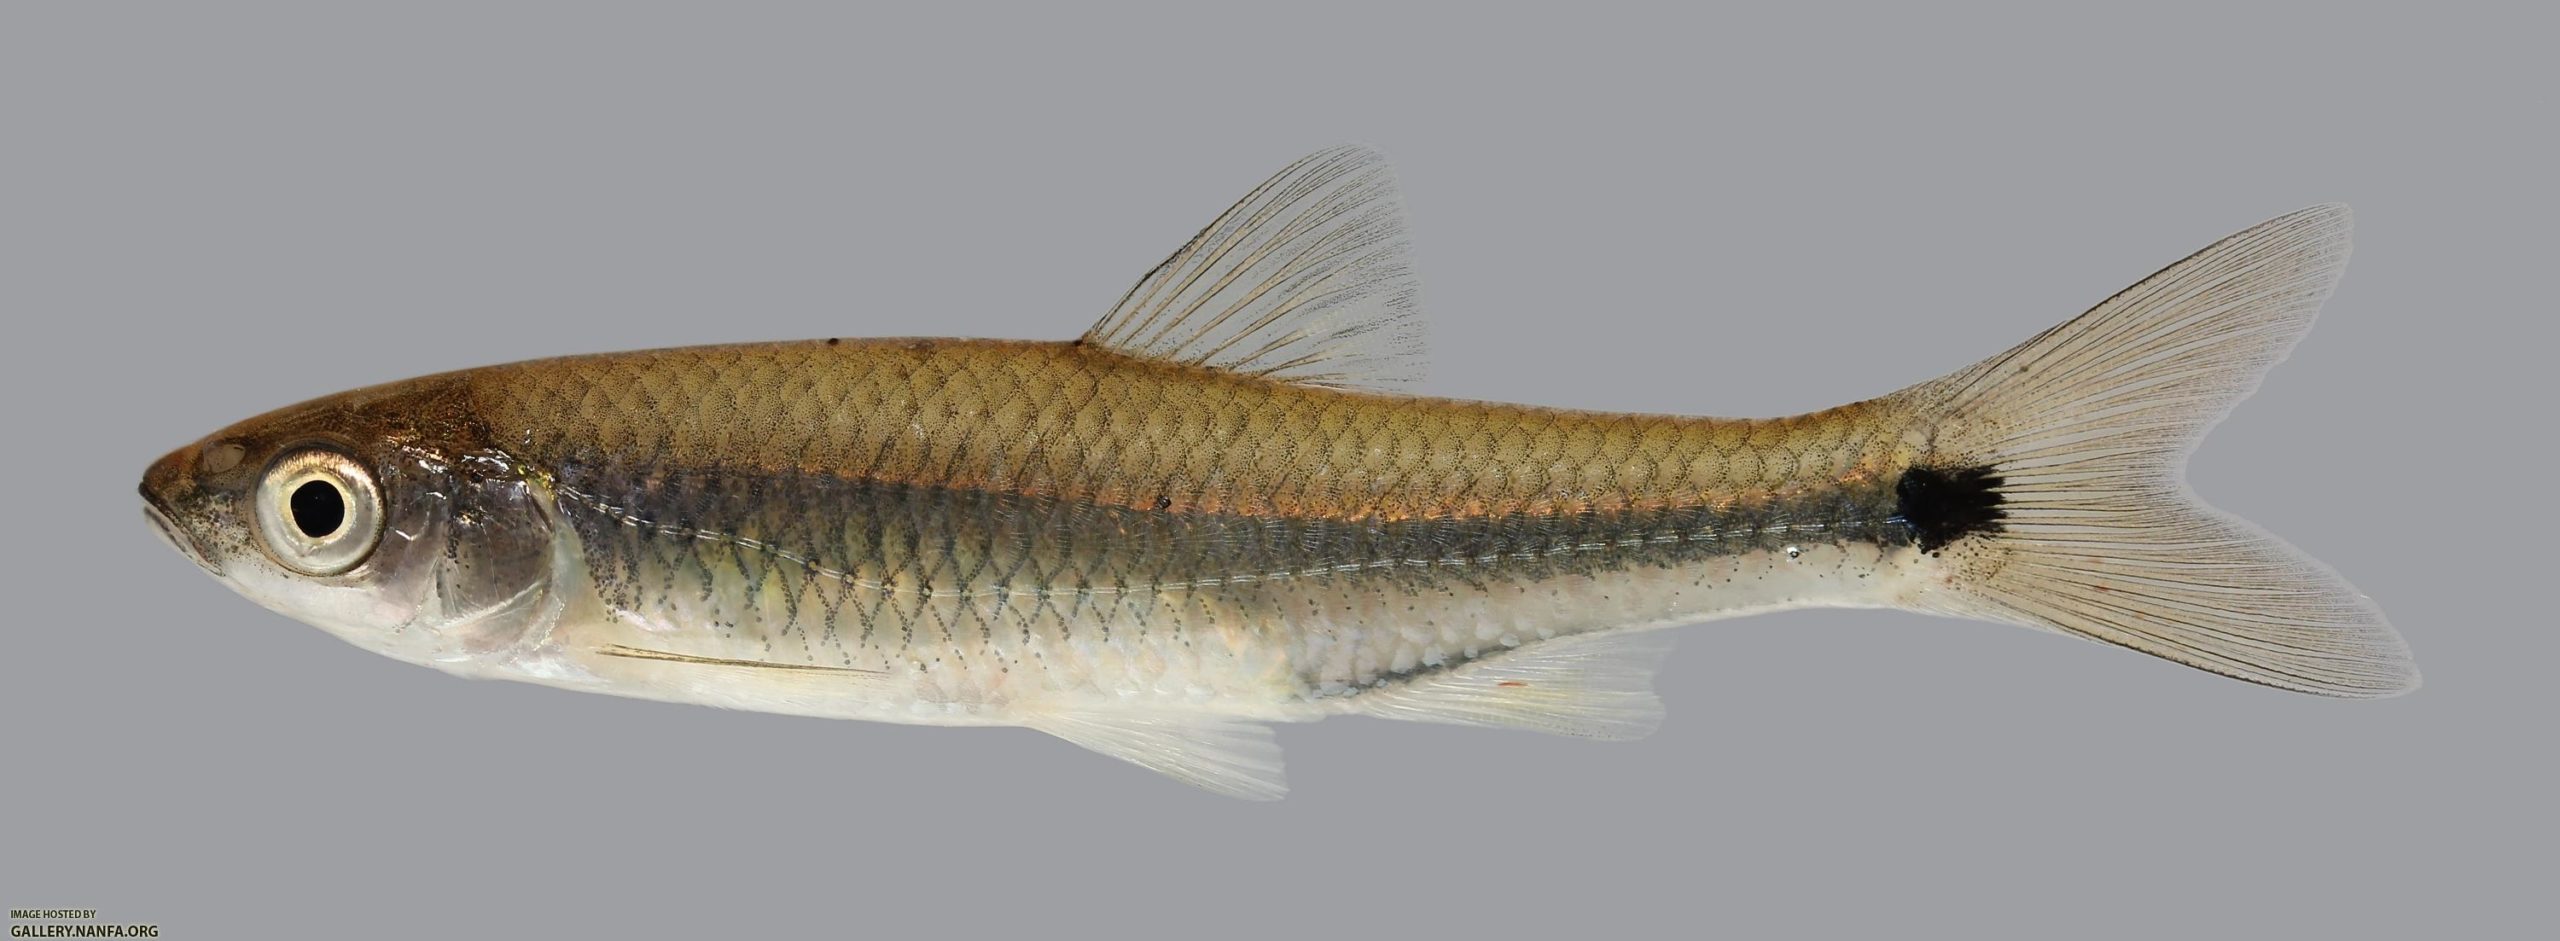  Cyprinella venusta: Barulho humano obriga peixes a "gritarem"